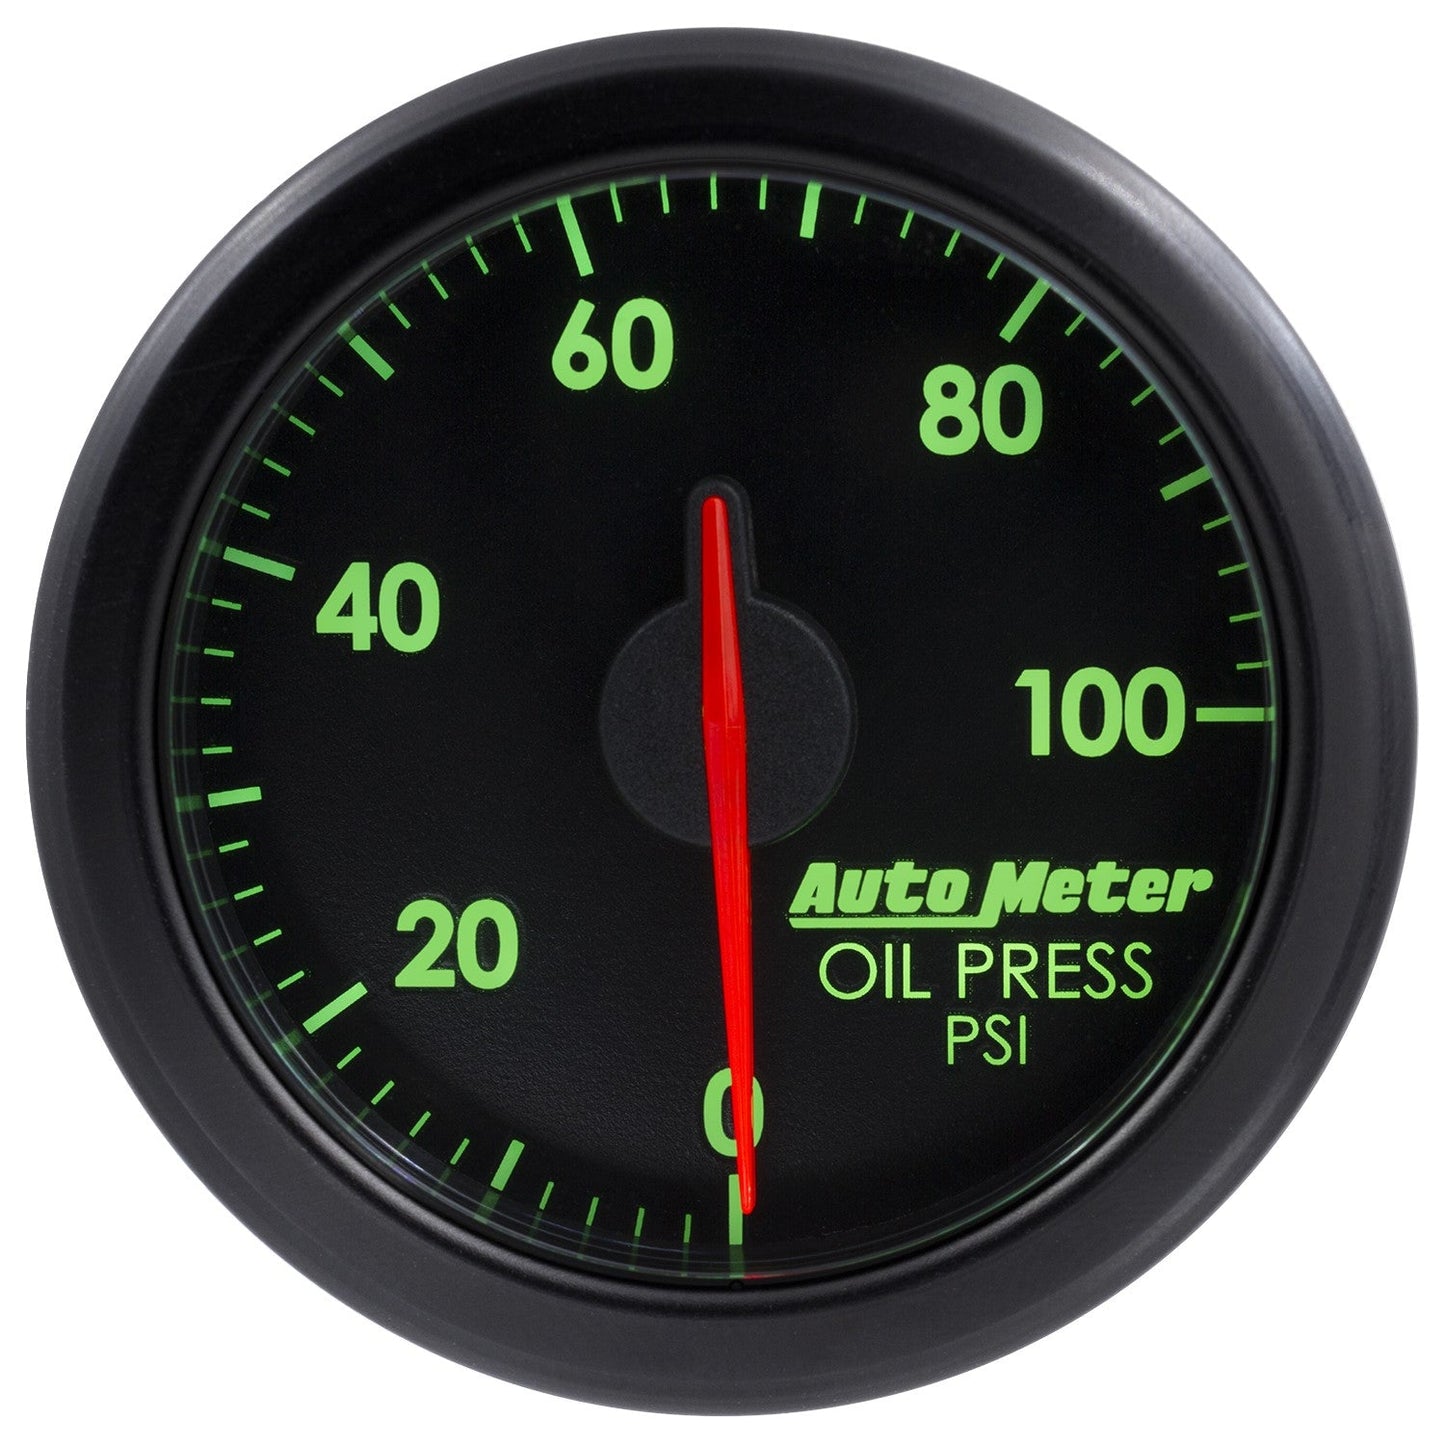 AutoMeter - PRENSA DE ACEITE DE 2-1/16", 0-100 PSI AIR-CORE AIRDRIVE NEGRO (9152-T) 